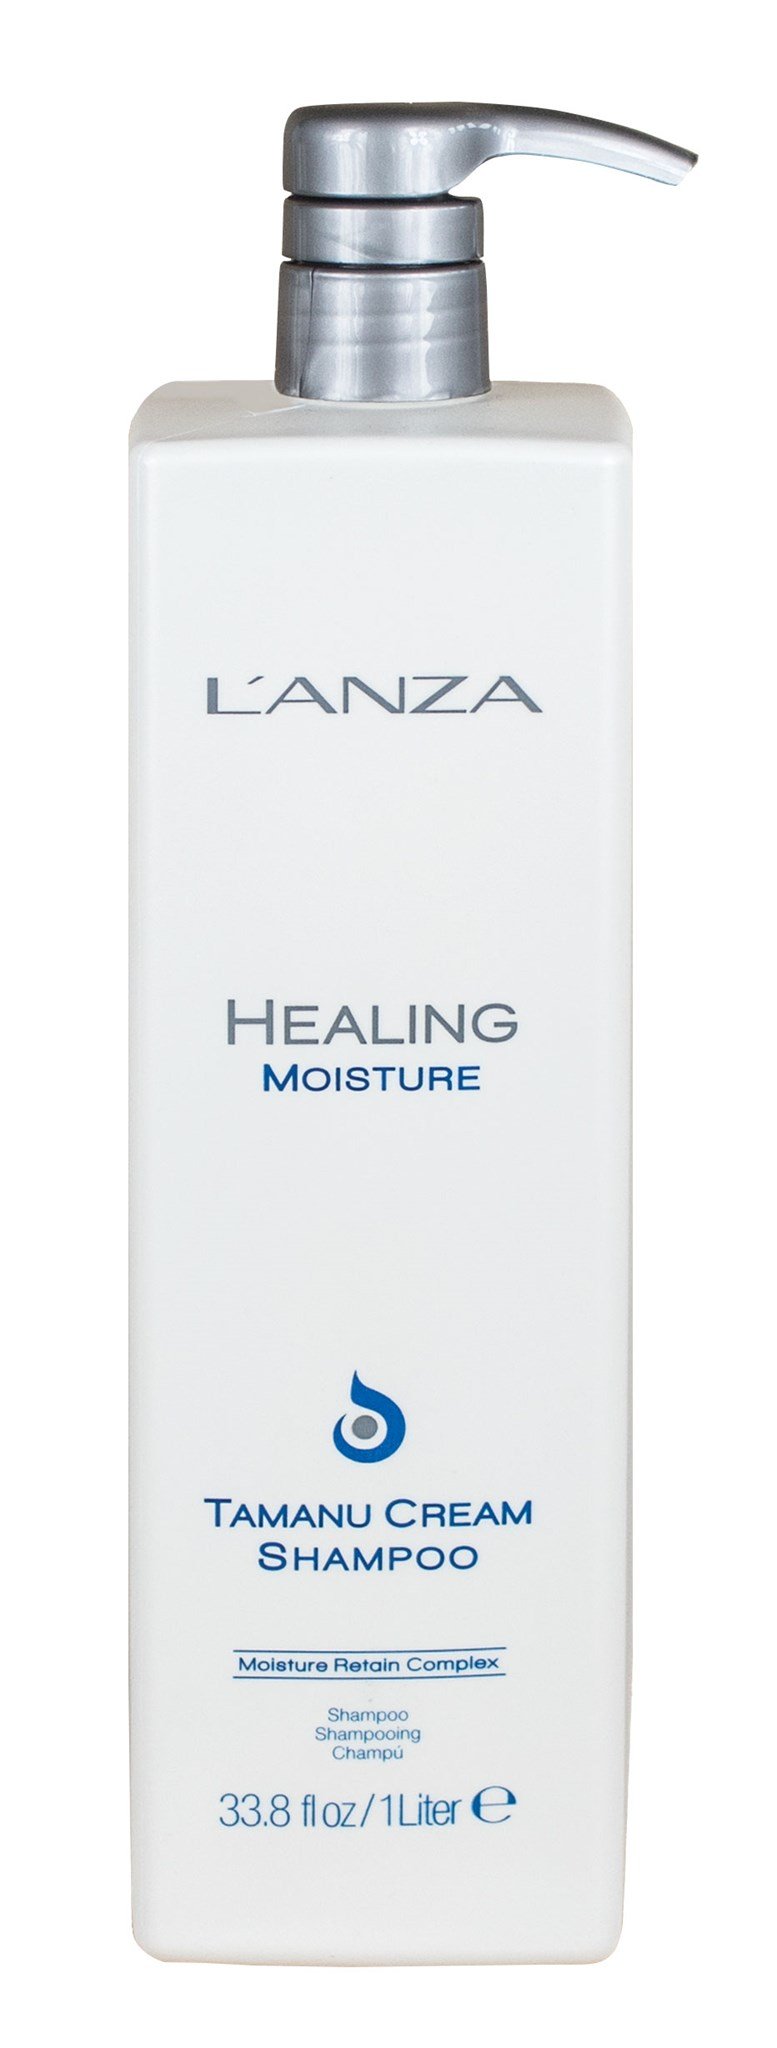 Lanza Healing Moisture Tamanu Cream Shampoo Ltr